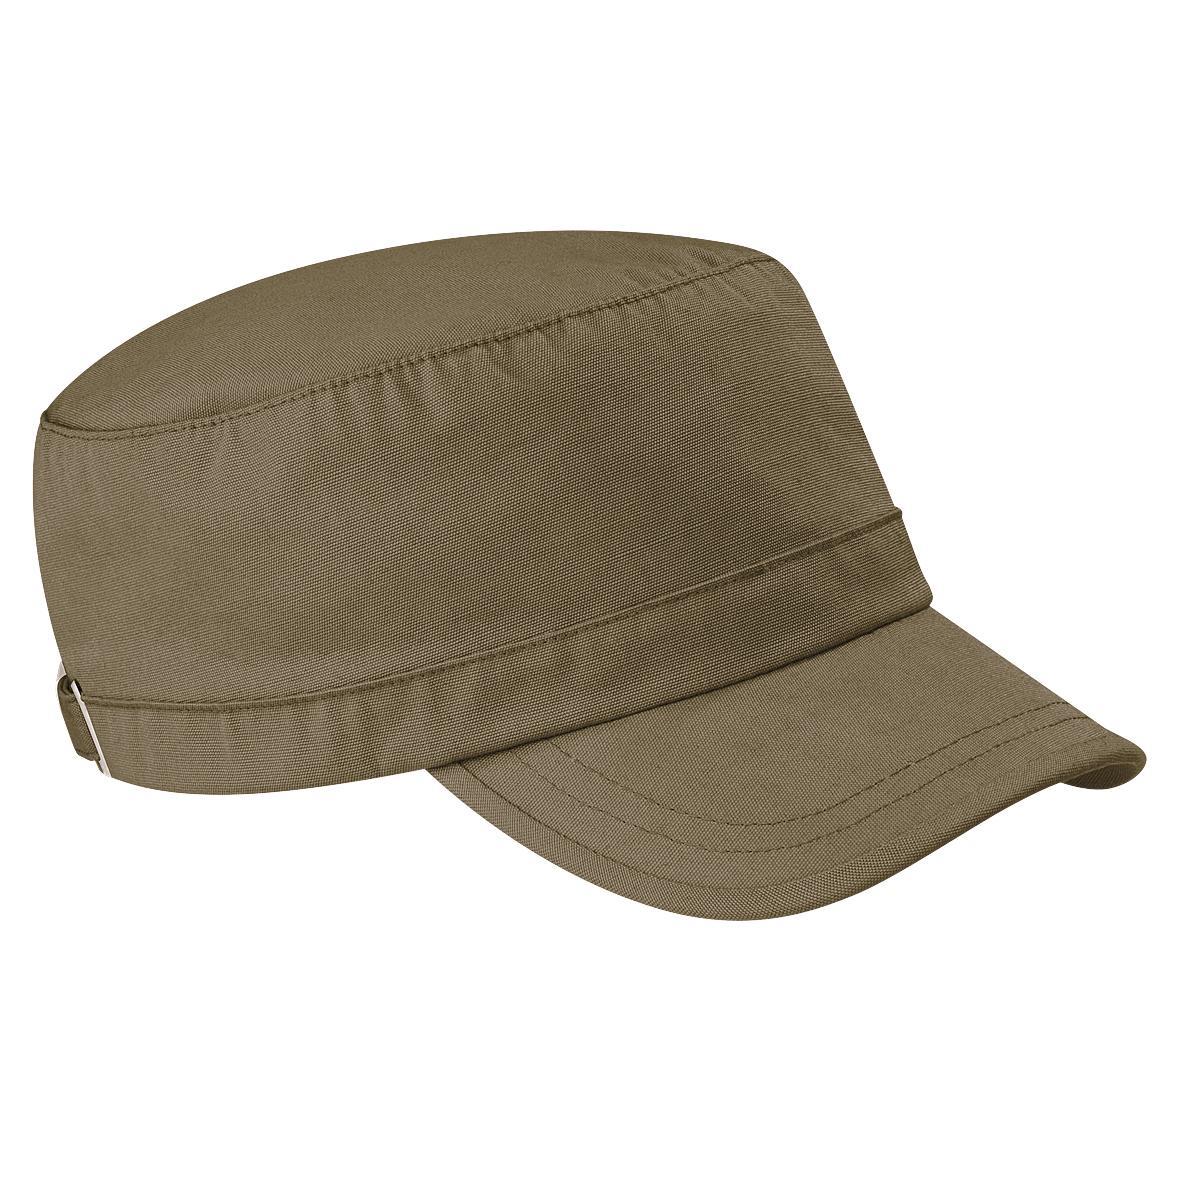 Beechfield Army Cap / Headwear (Khaki) (One Size)